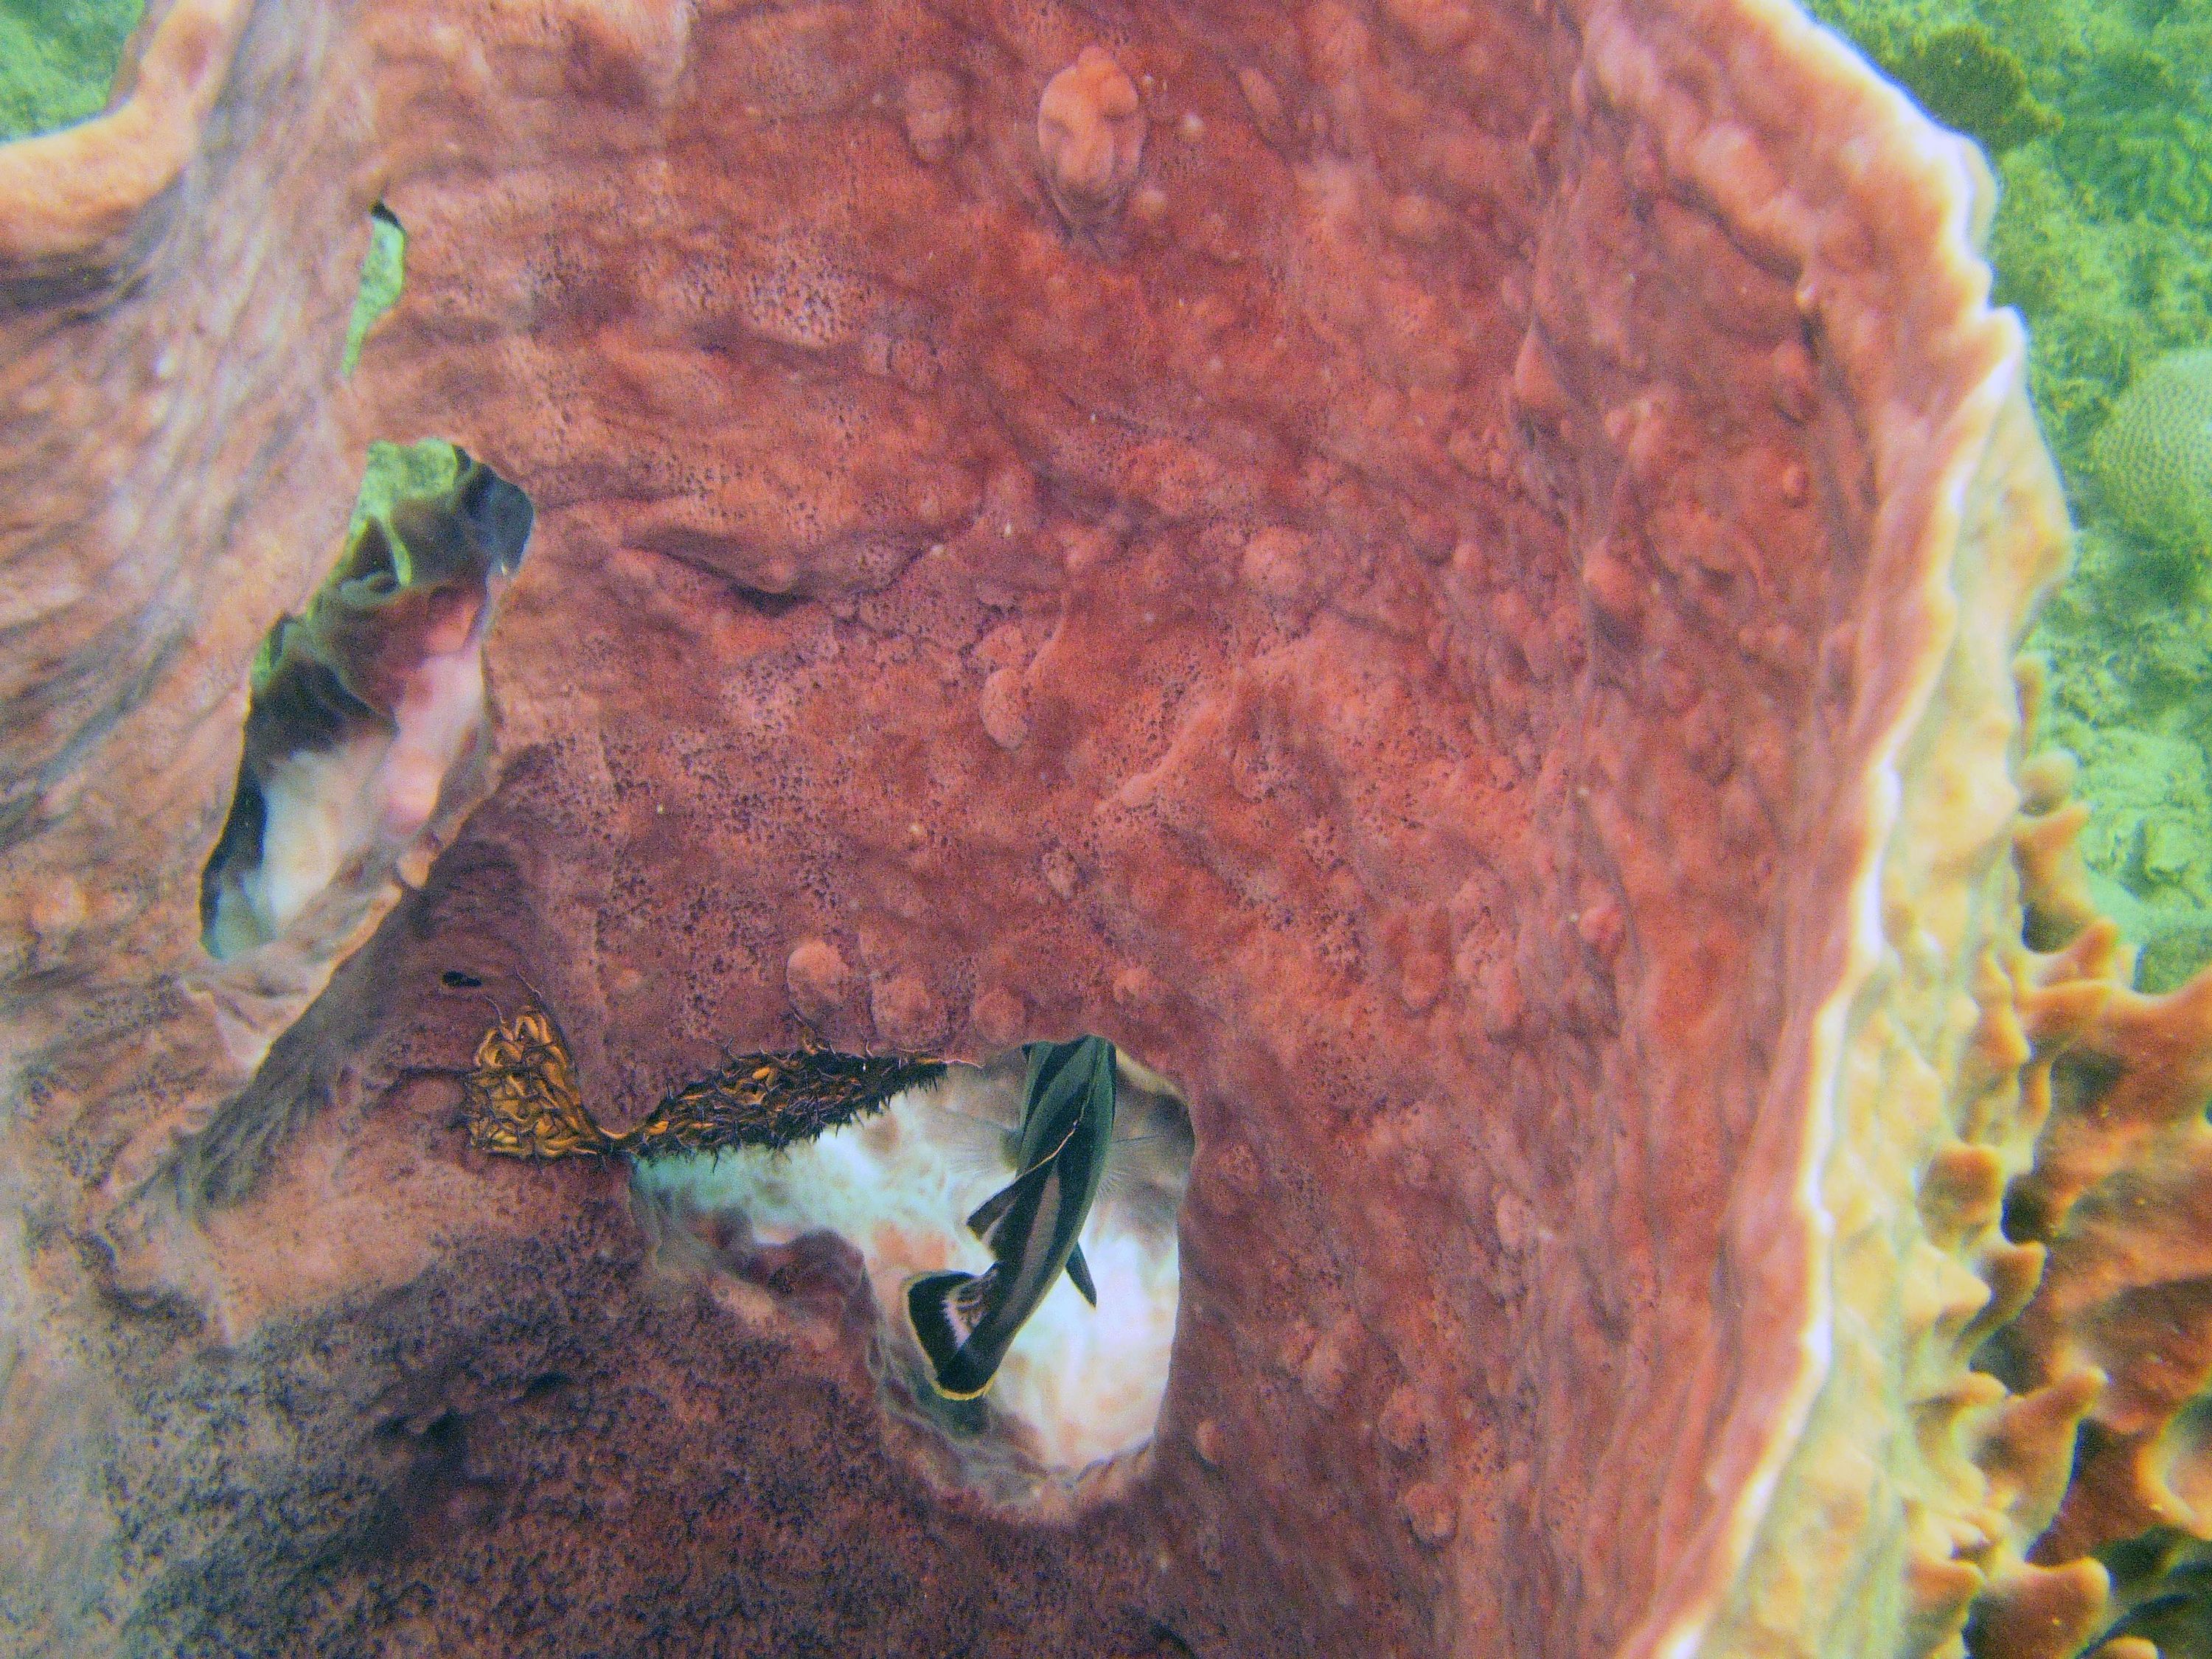 Banded Butteflyfishinside a Barrel Sponge.